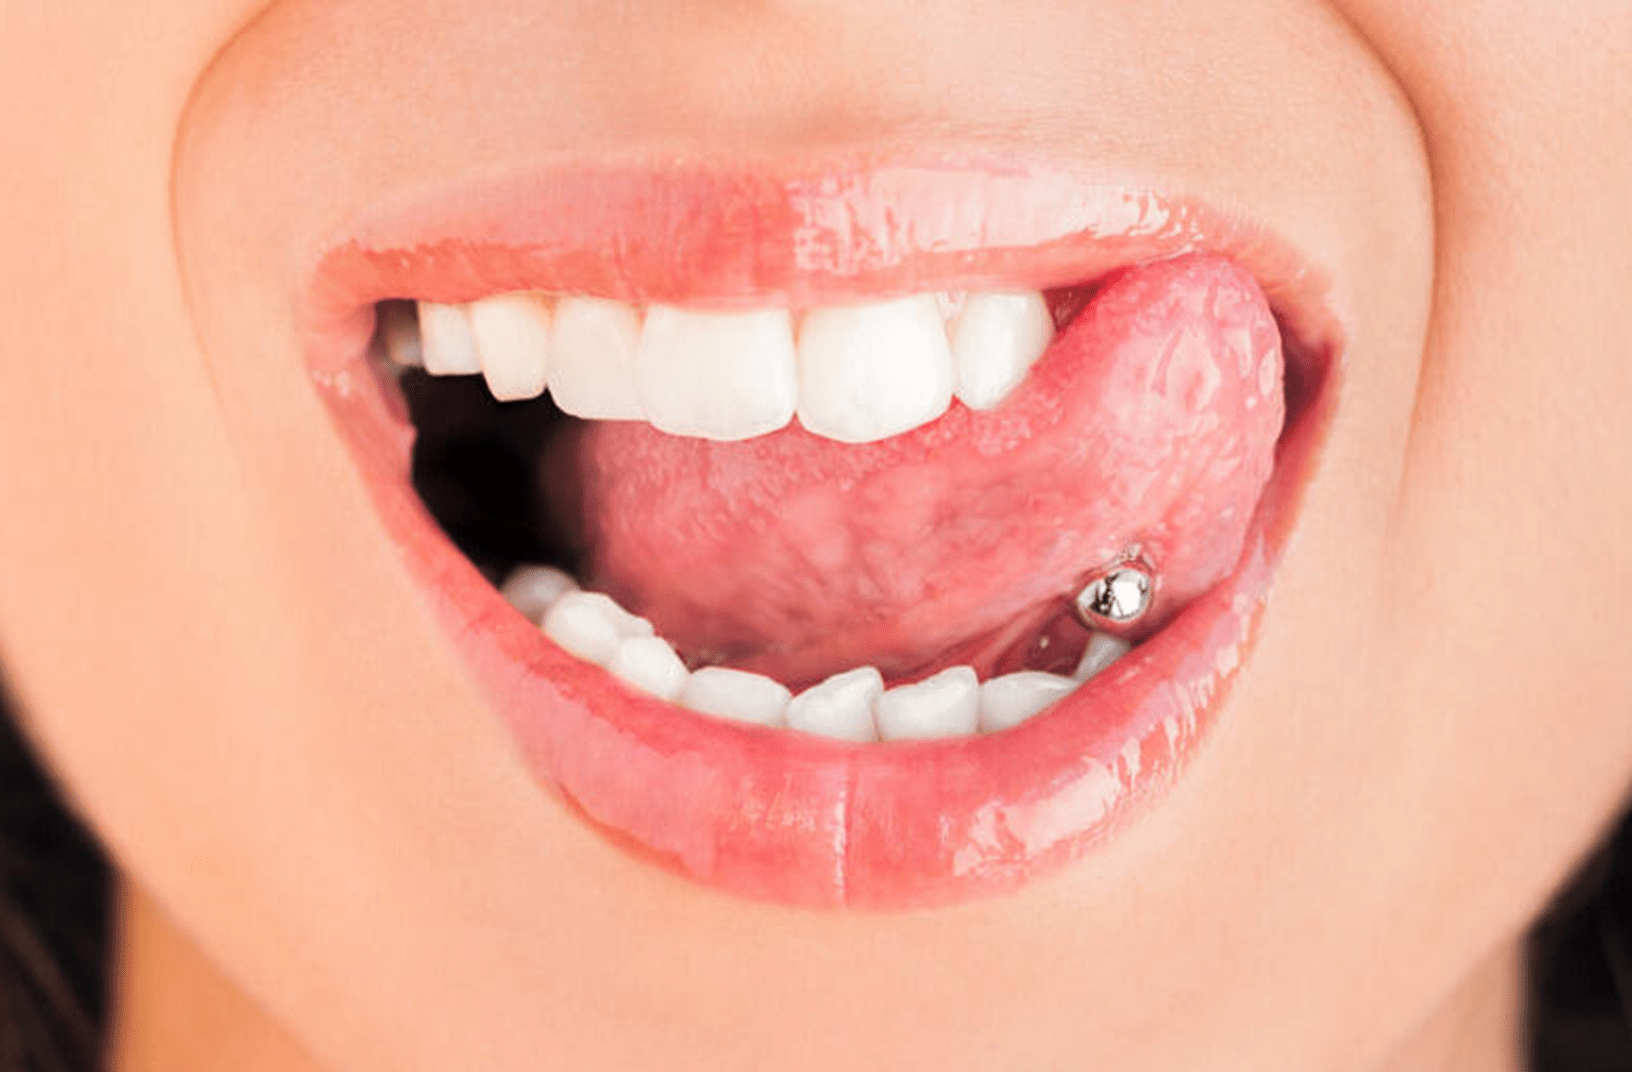 Les piercings buccaux et leurs risques pour la santé bucco-dentaire 